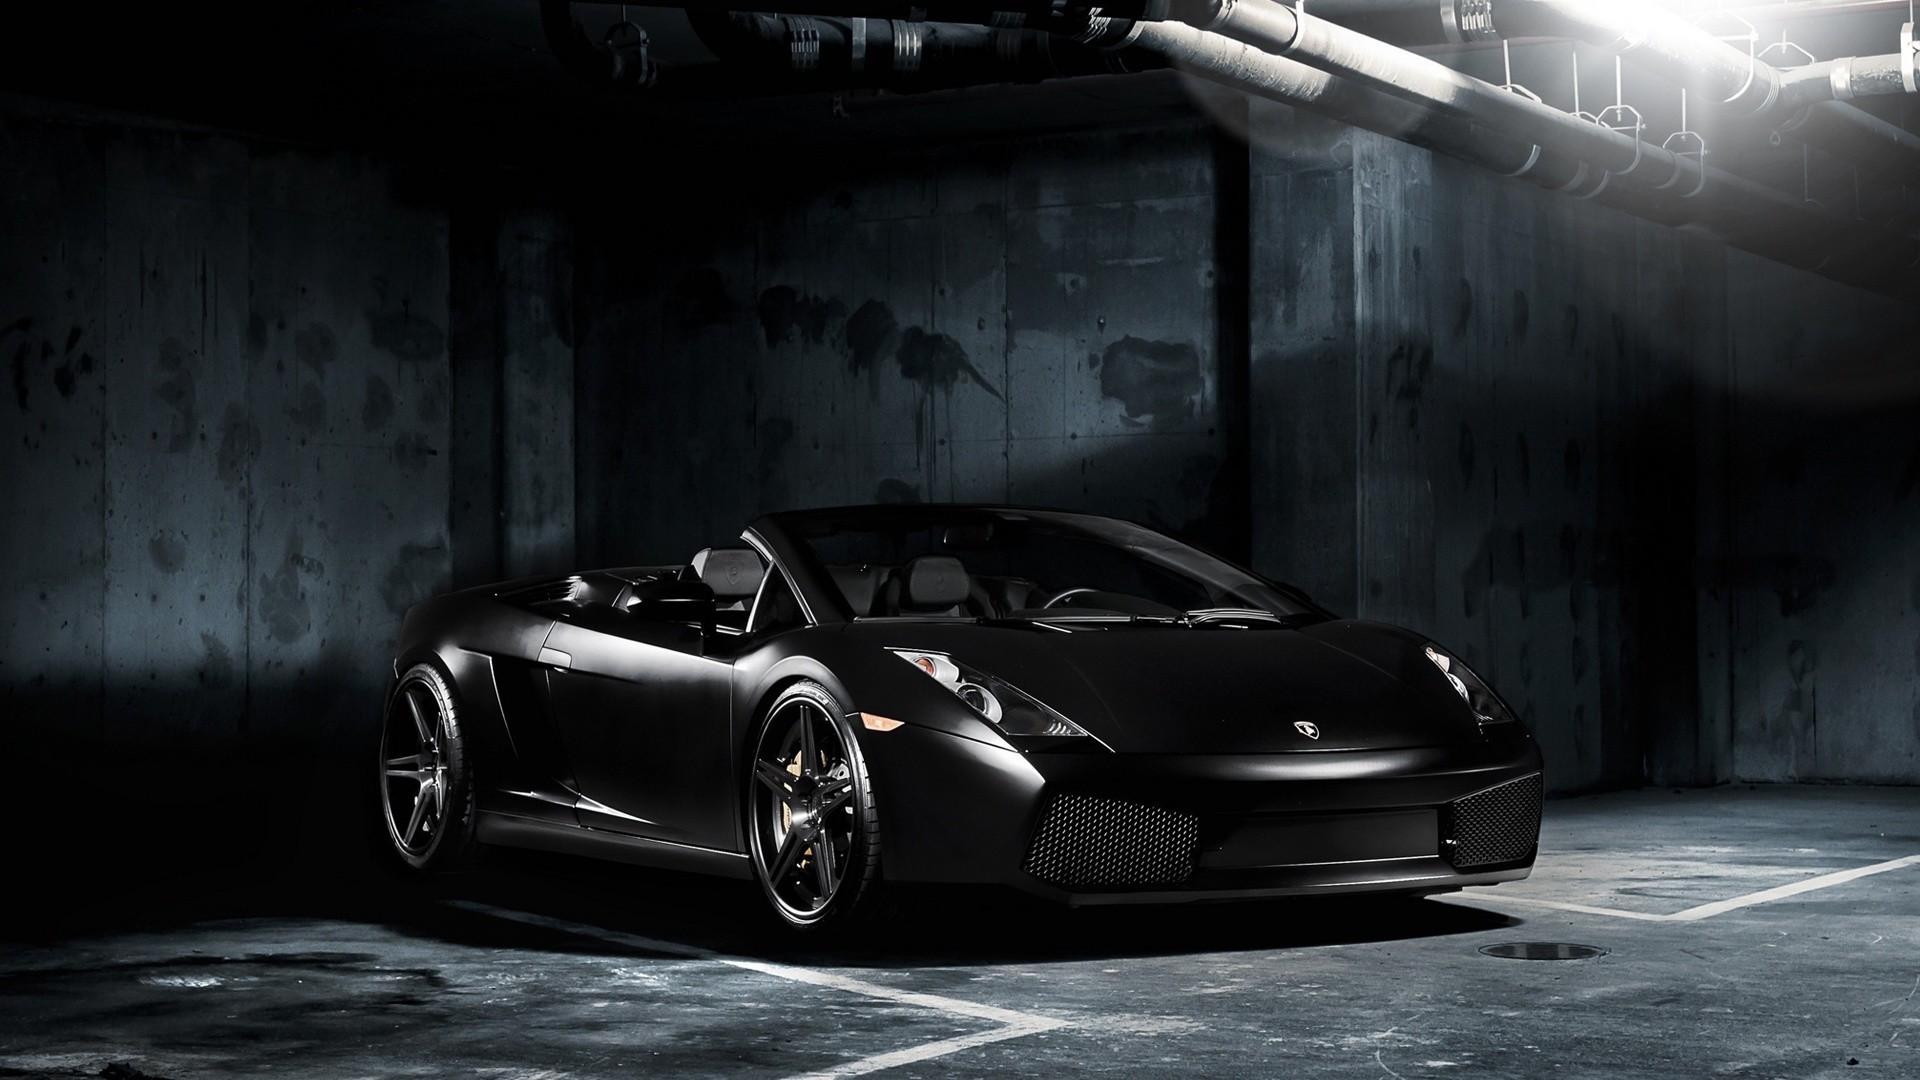 voiture jaguar noire fonds d'écran hd,véhicule terrestre,véhicule,voiture,supercar,voiture de sport